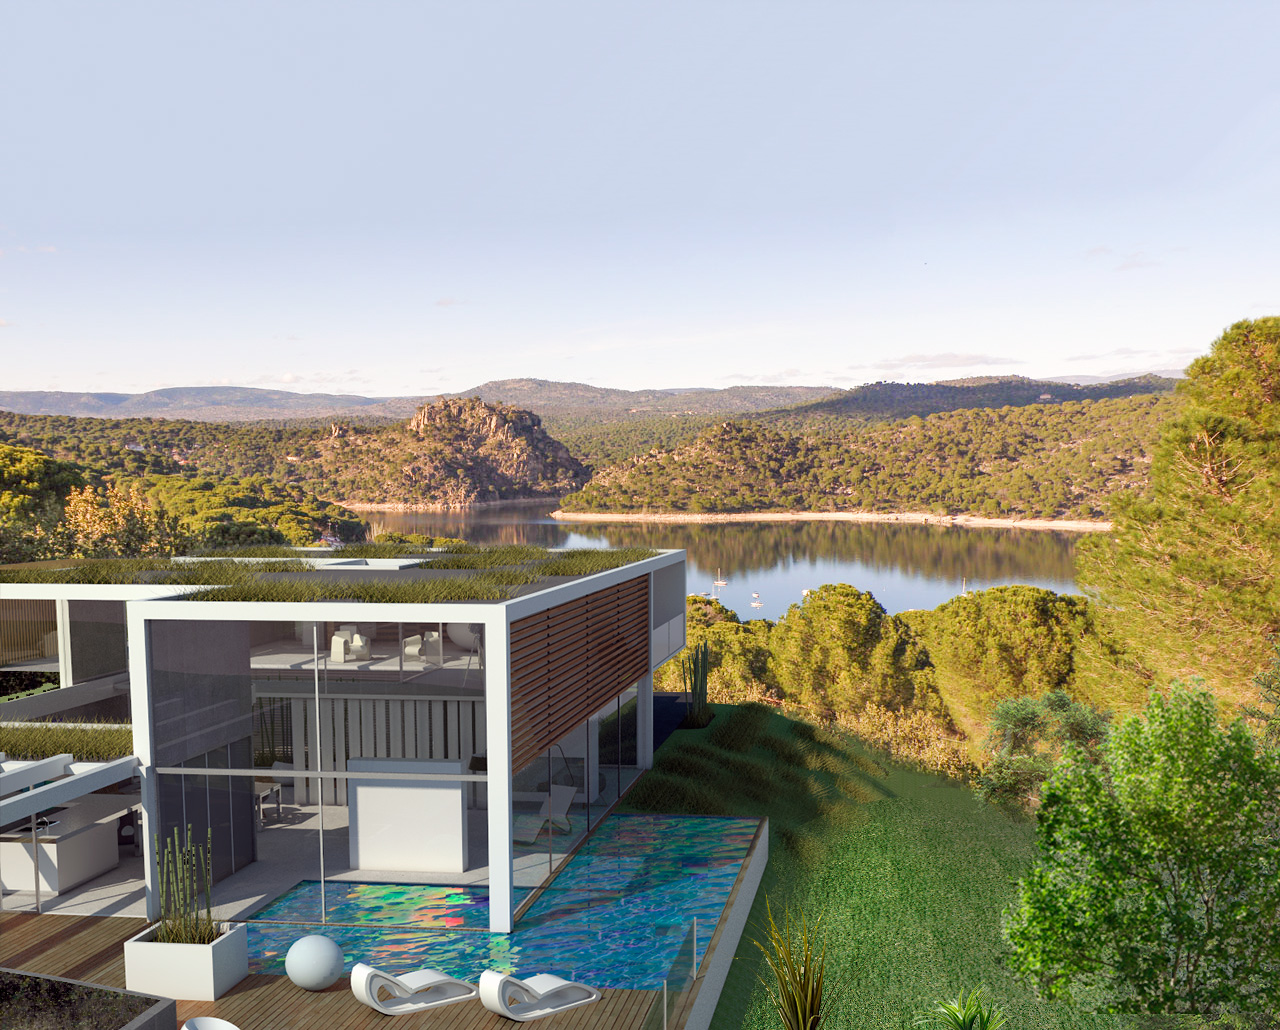 modelo-de-renderizado-fotorrealista-con-vistas-al-lago-y-al-bosque-con-piscina-terraza-ventanales-moderno-15-1